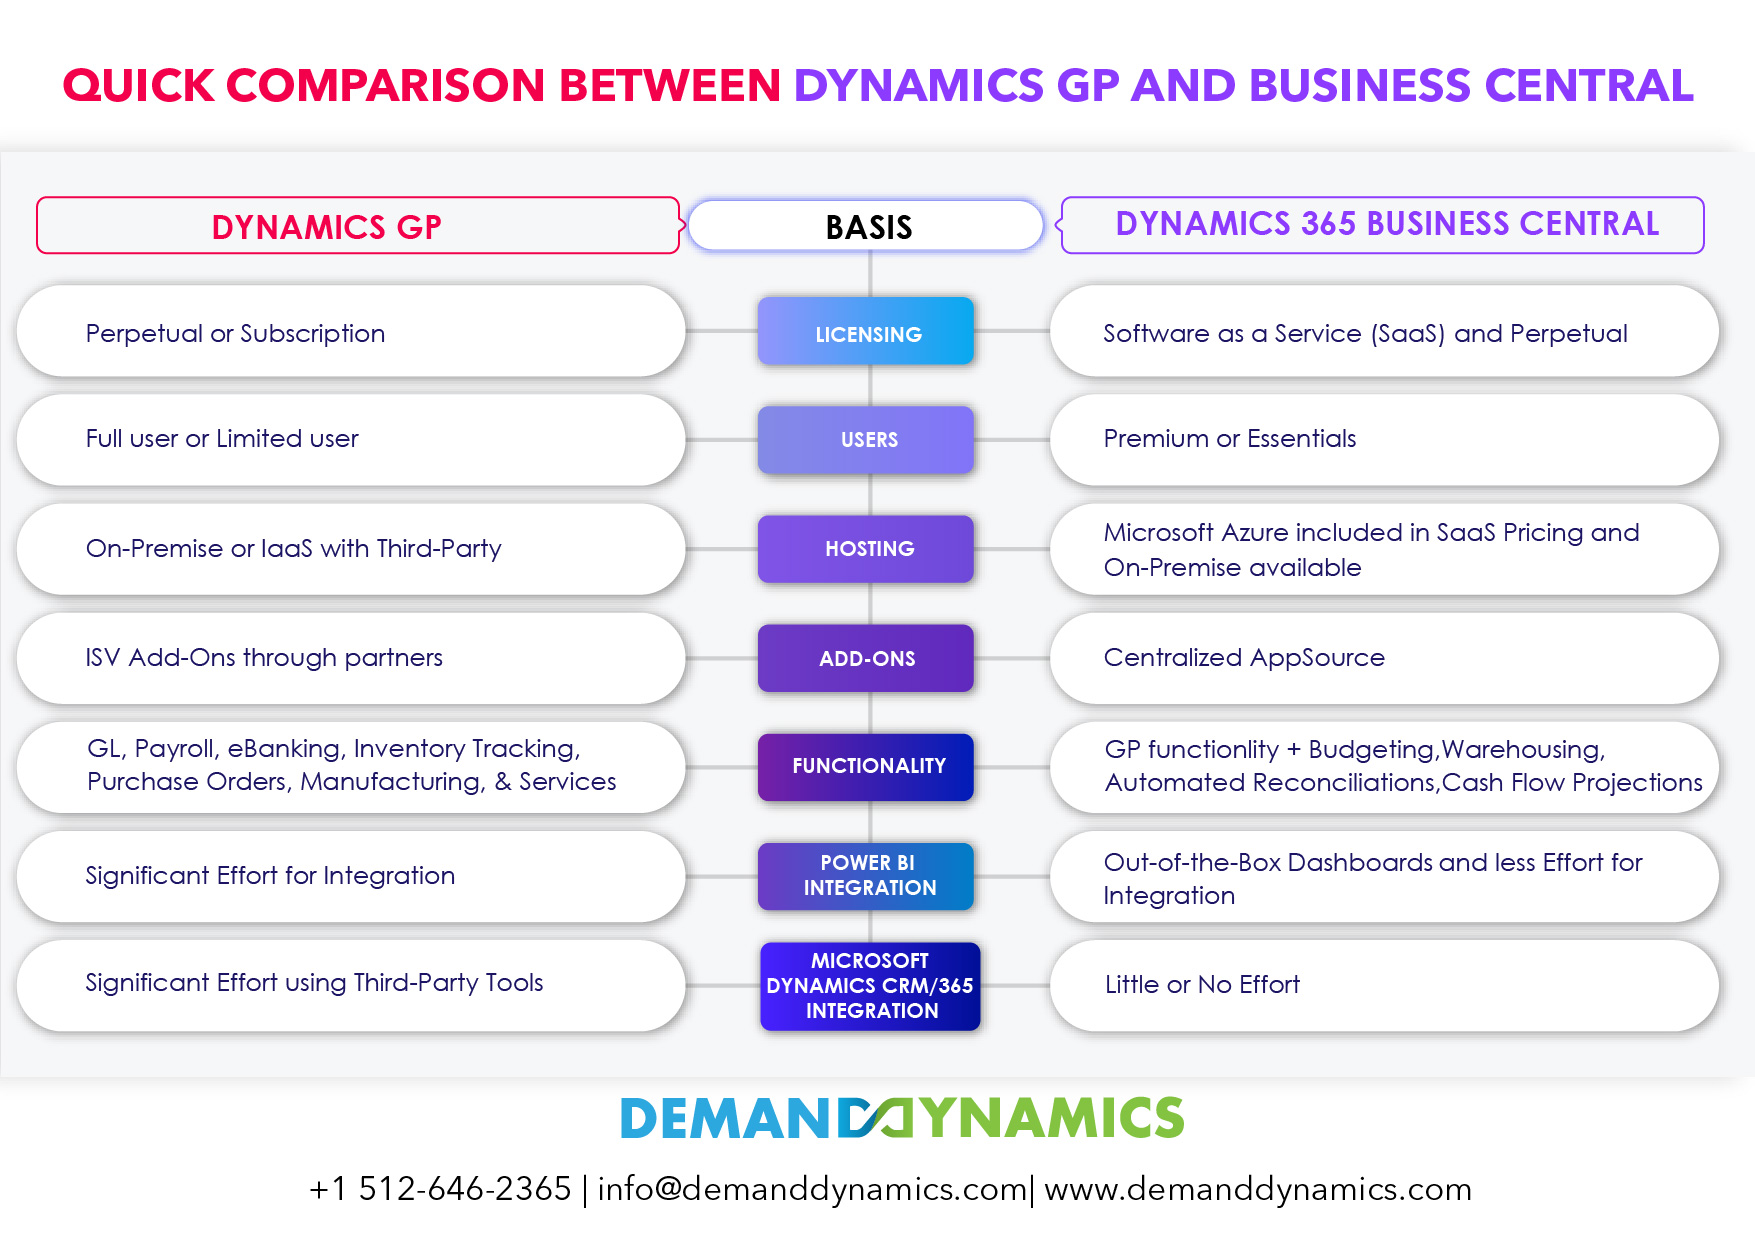 Dynamics GP vs Business Central Comparison infographic